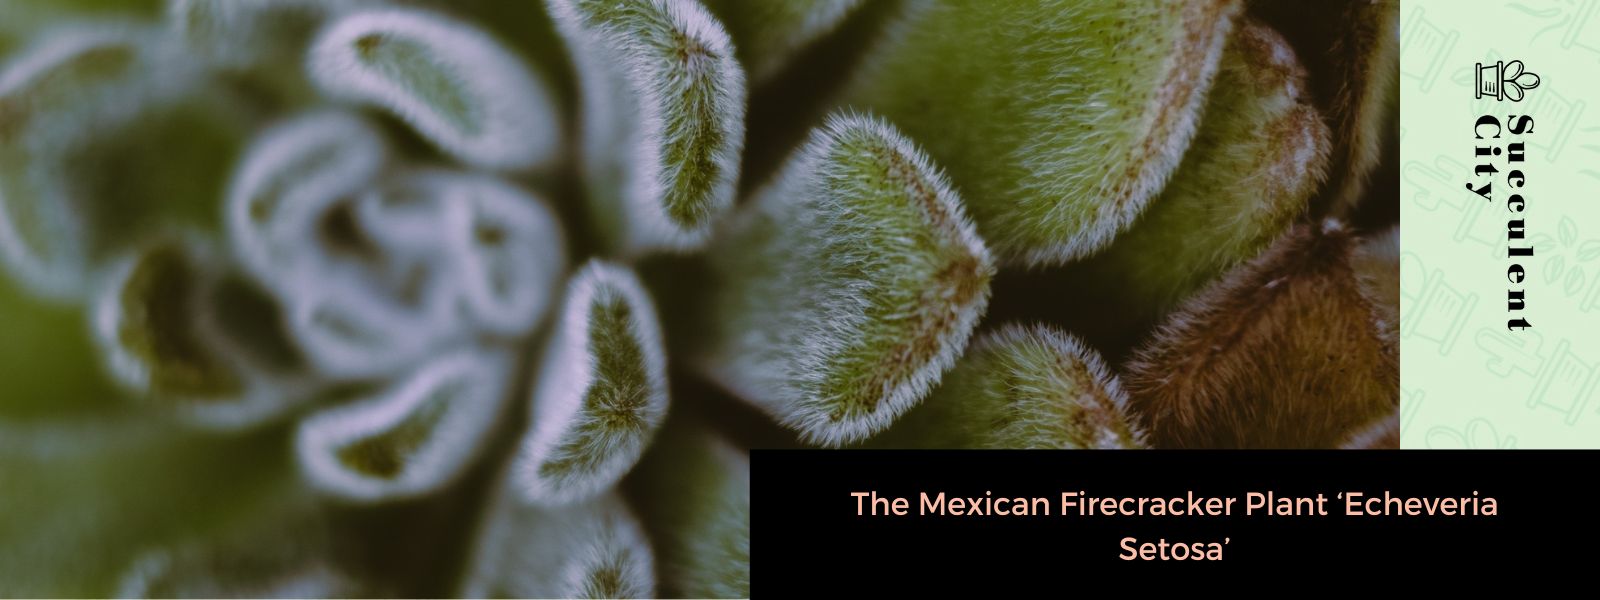 La planta mexicana de fuegos artificiales “Echeveria Setosa”